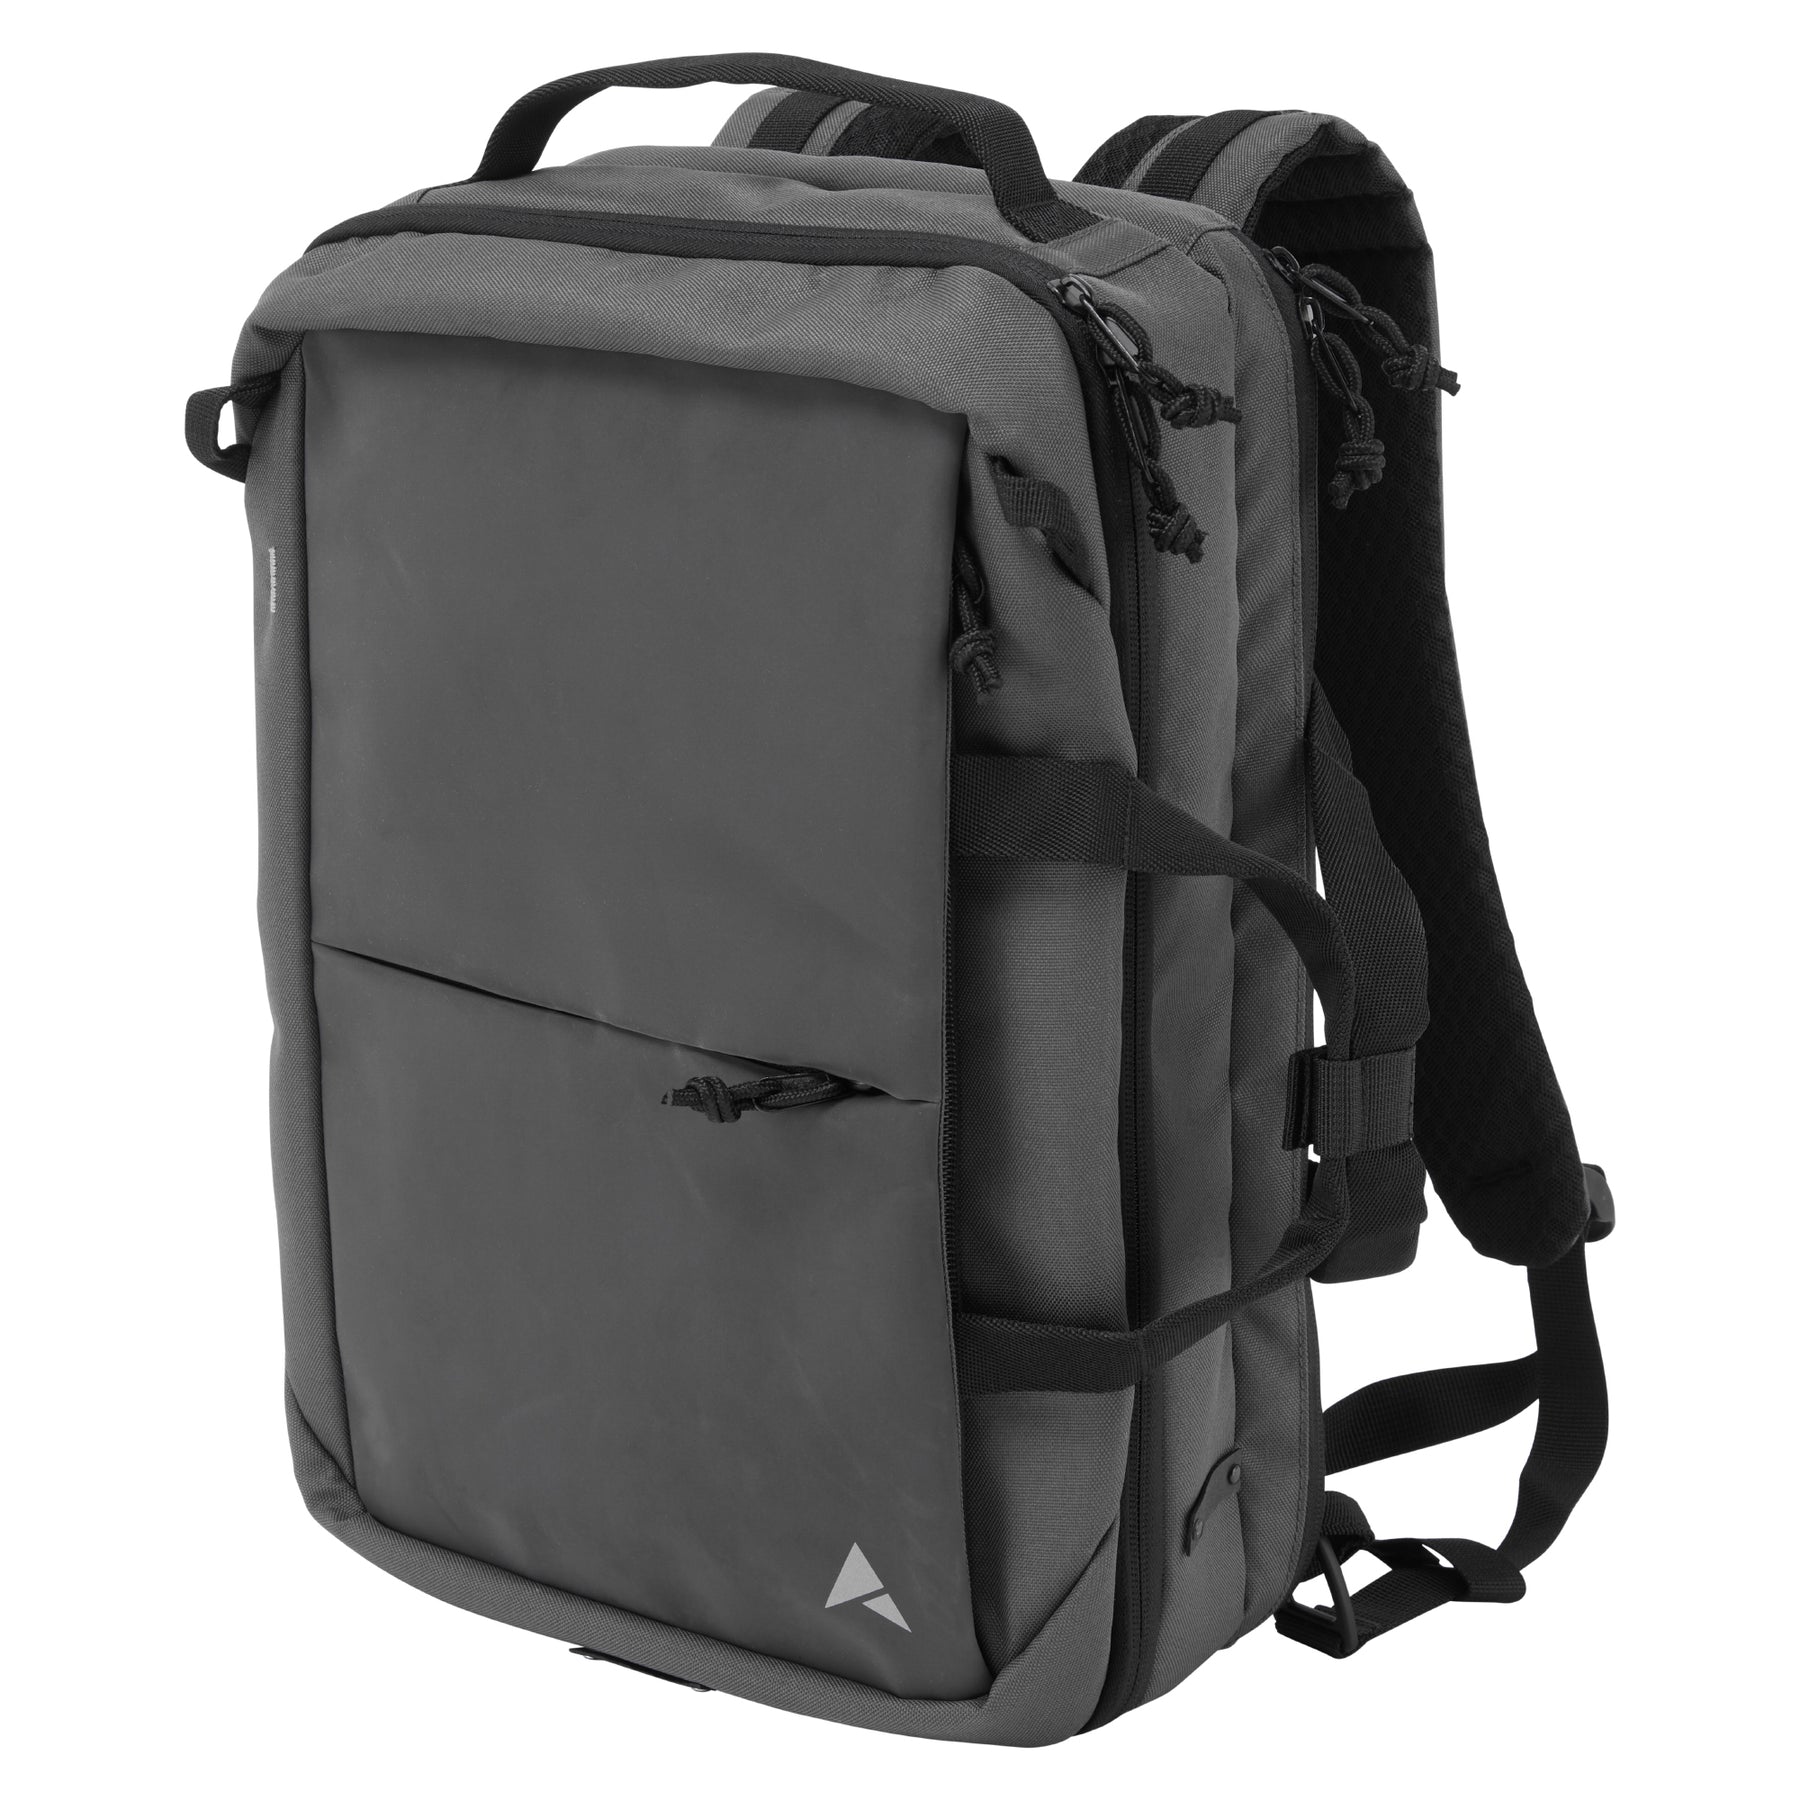 Altura Grid Travel Bag Charcoal 20L